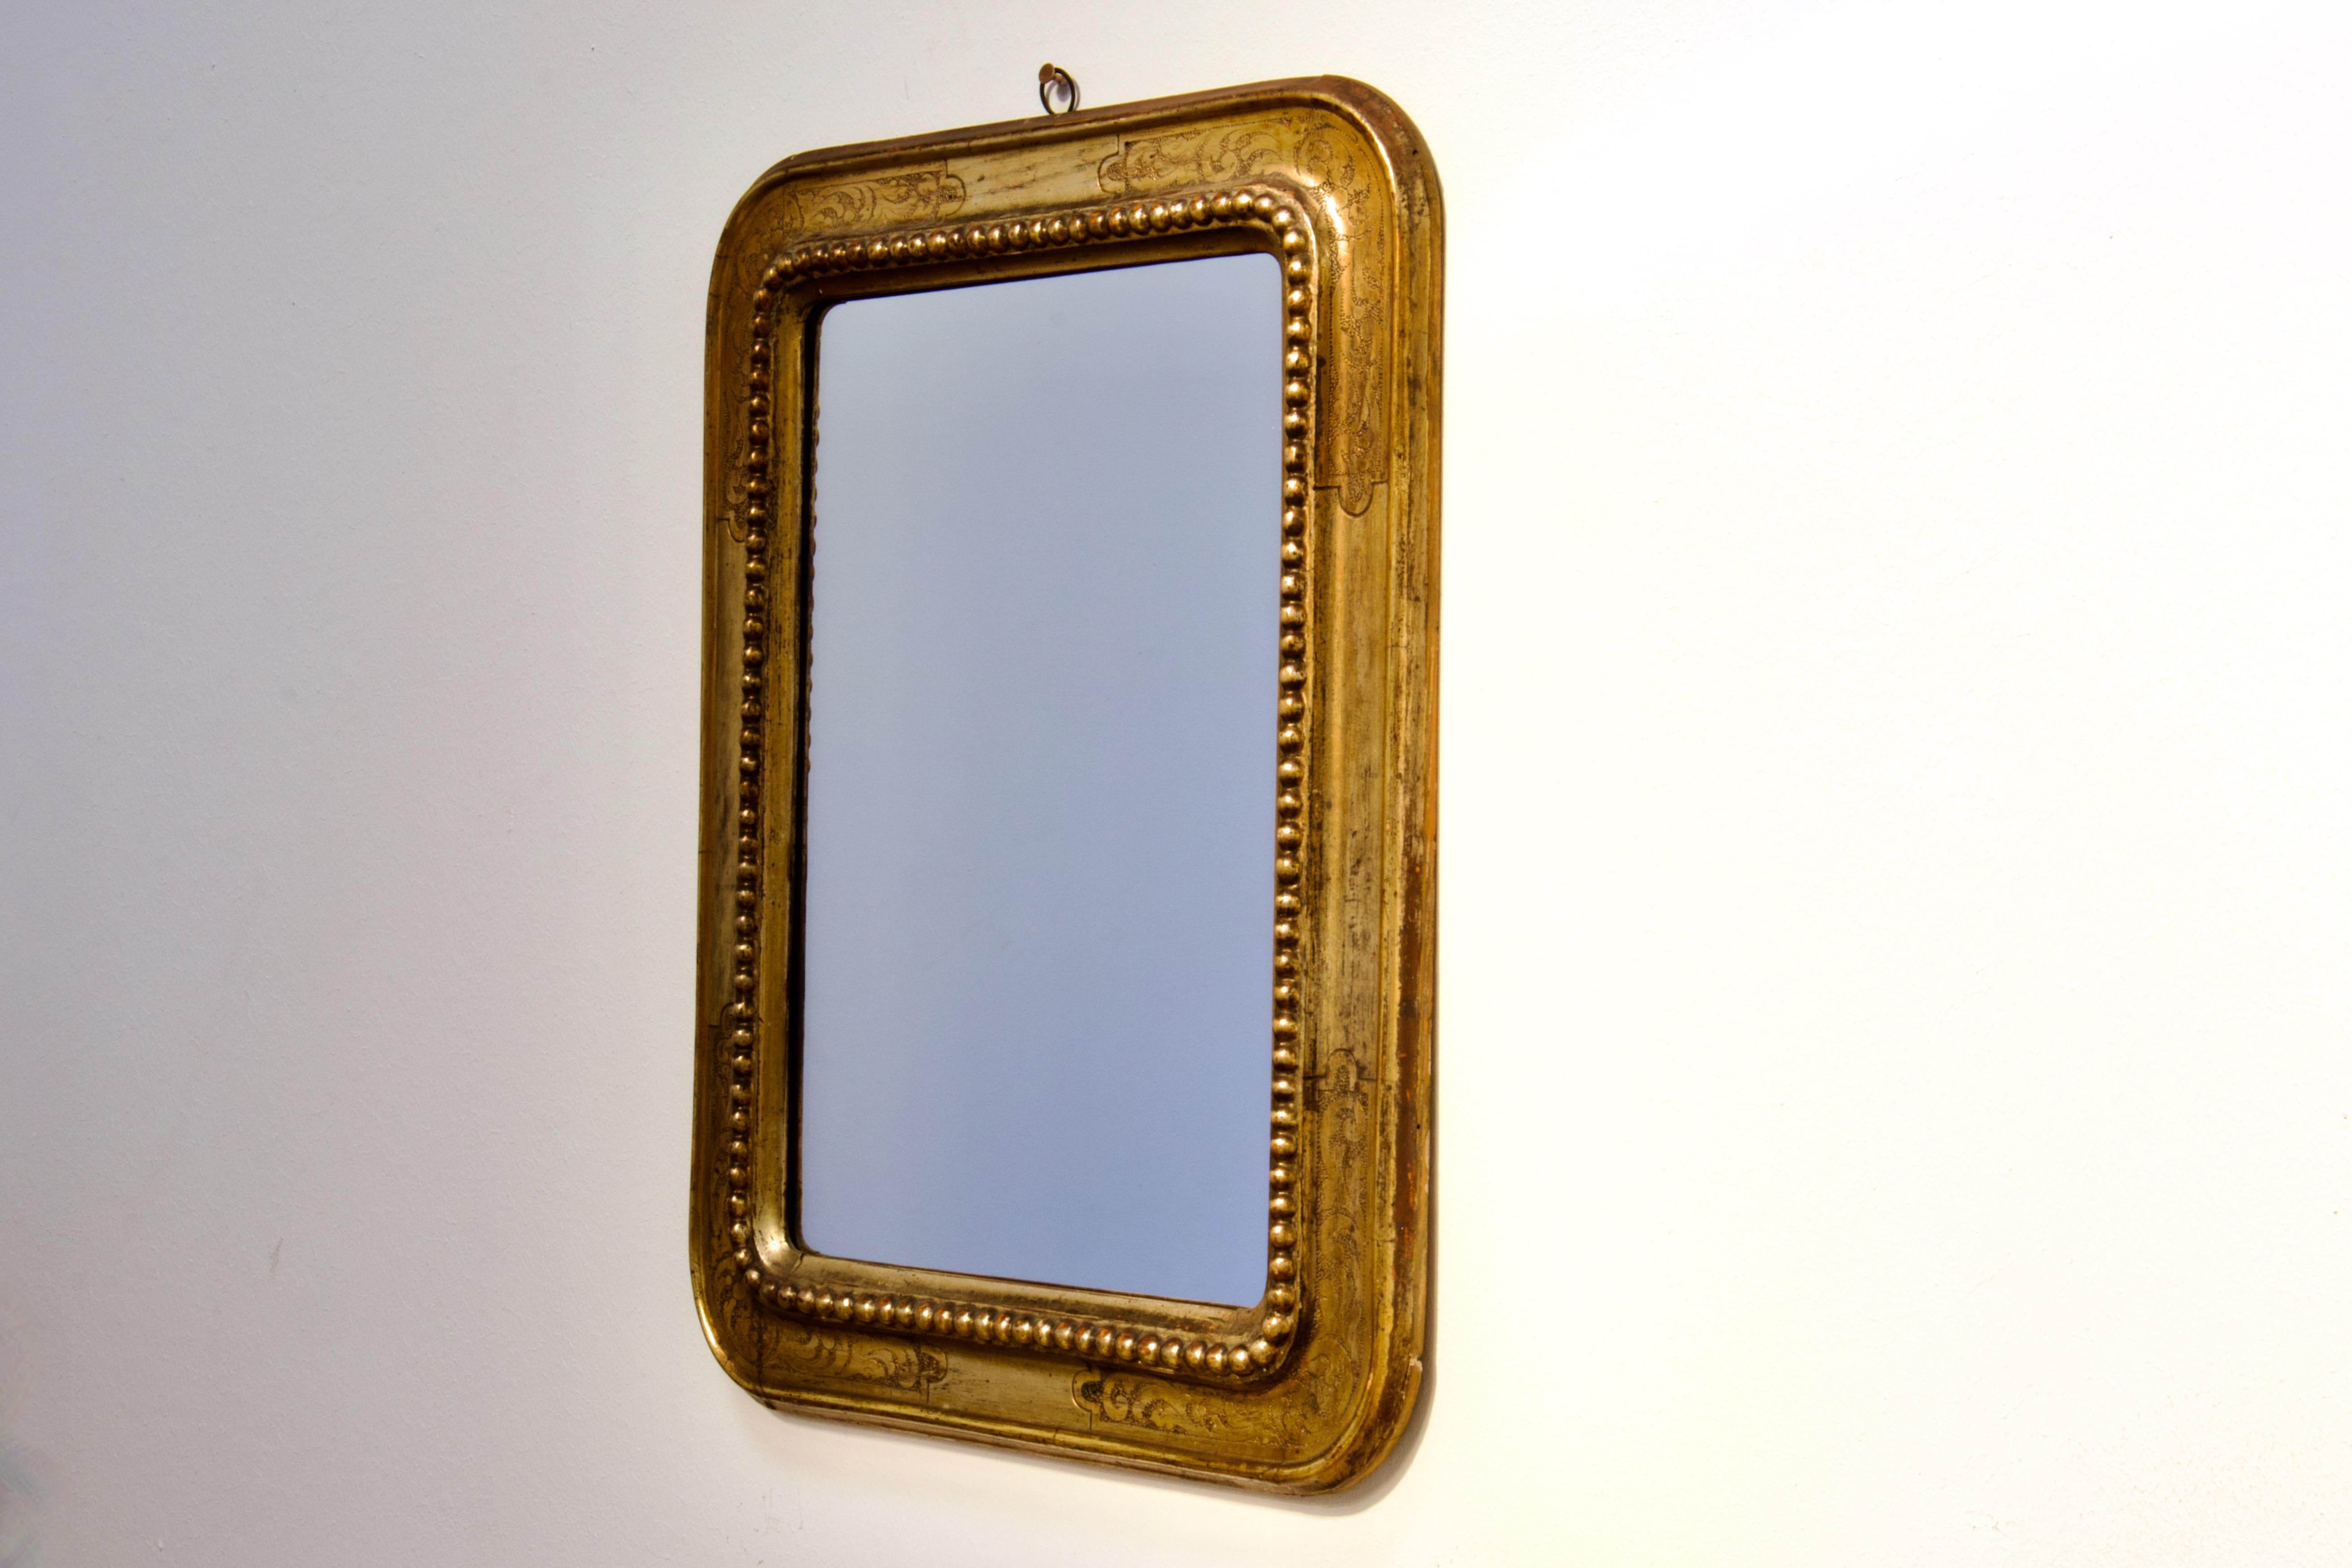 Superbe miroir mural Belle Époque du milieu ou de la fin des années 1800 en Italie. Les proportions exquises, les matériaux les plus nobles, la maîtrise de l'artisanat et les formes organiques illustrent cette période de prospérité économique, où la